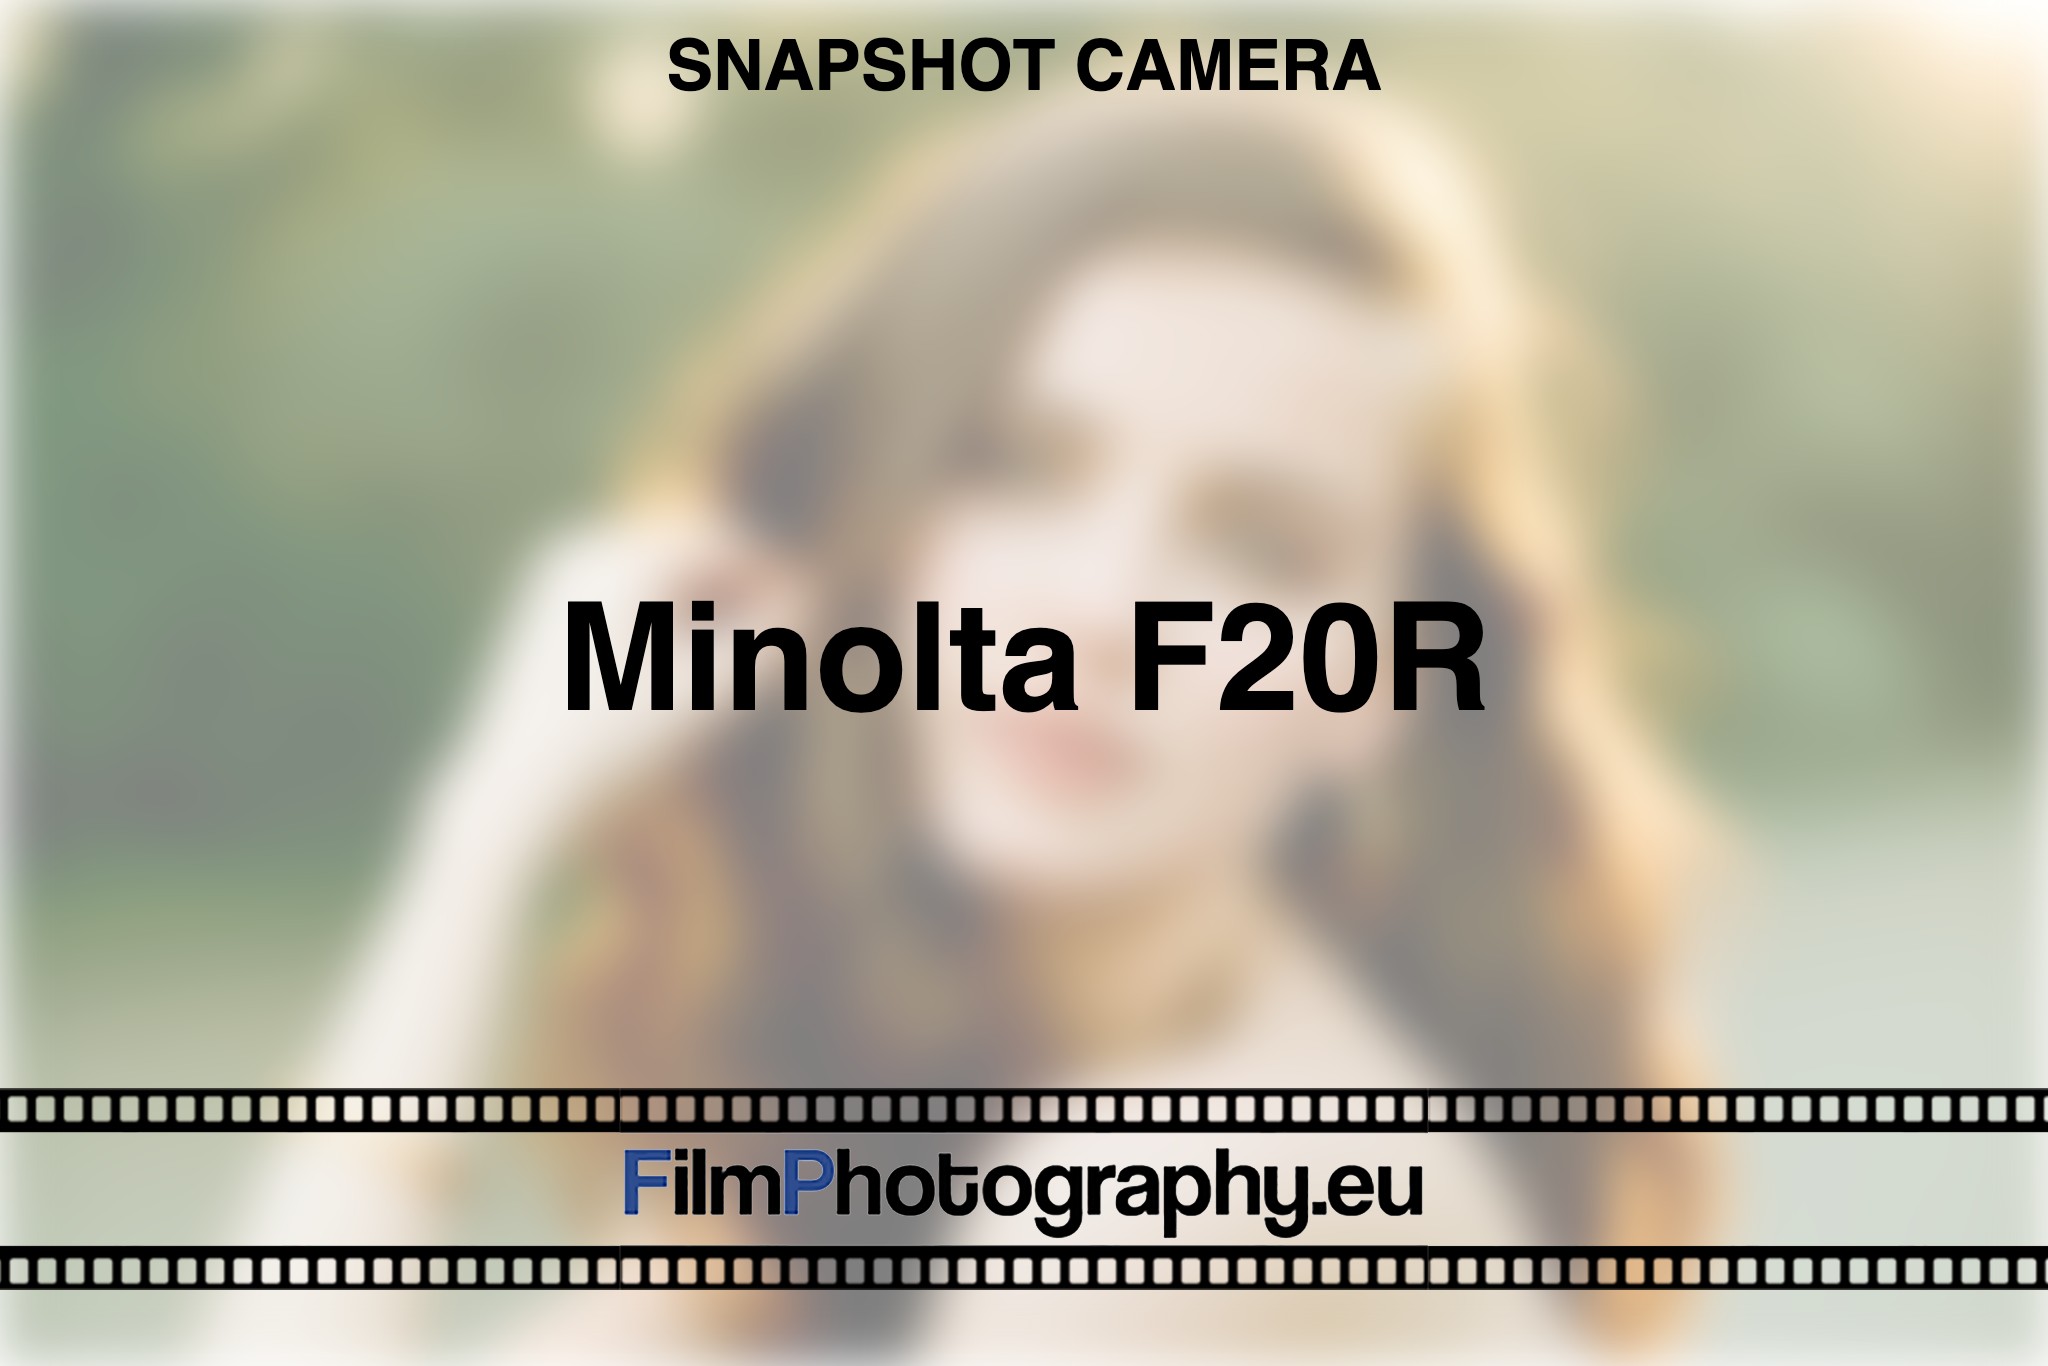 minolta-f20r-snapshot-camera-bnv